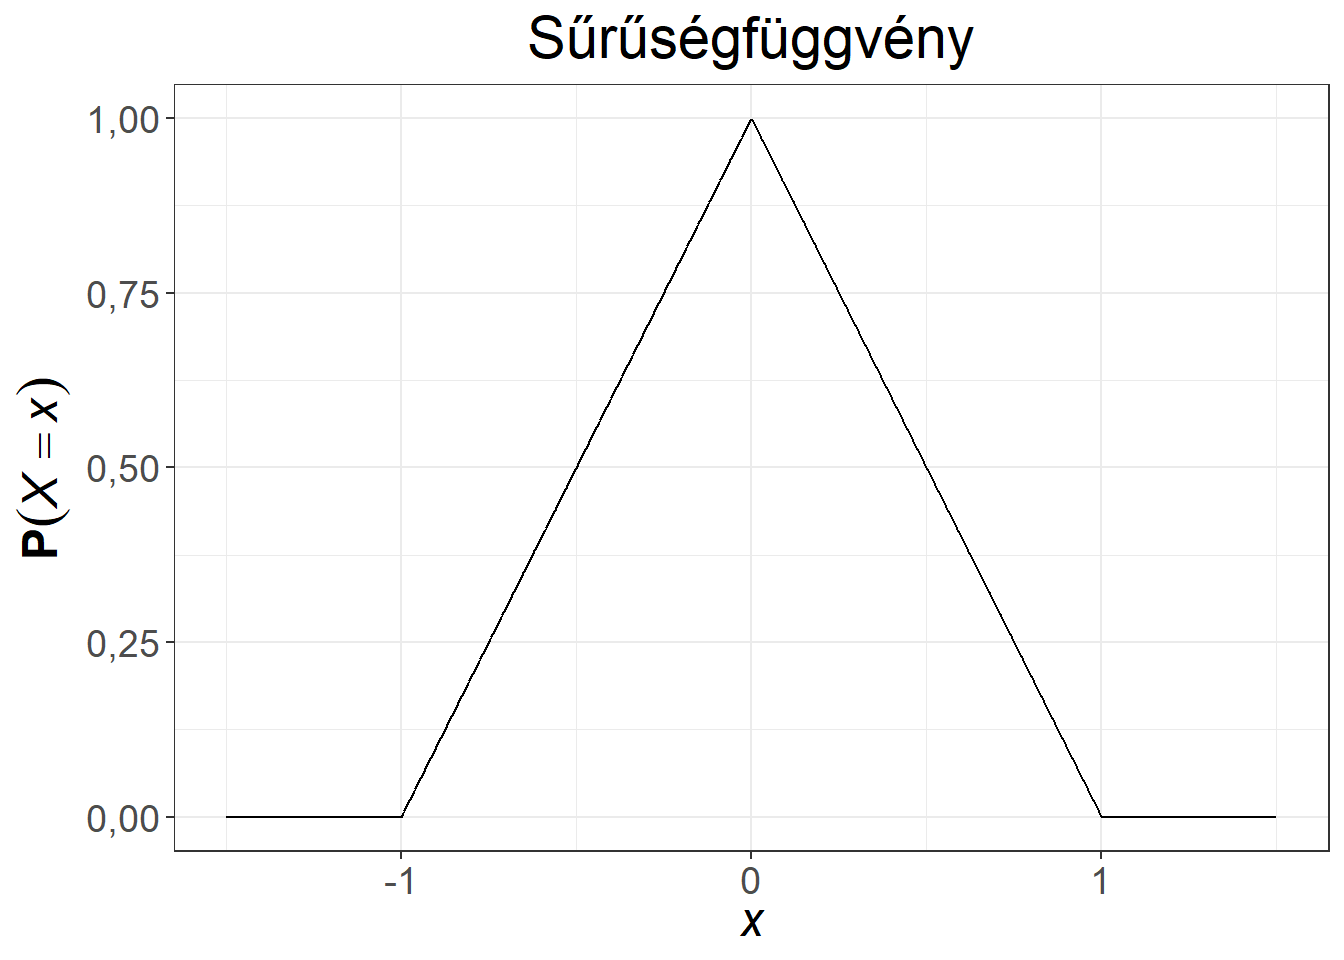 Folytonos valószínűségi változó sűrűség- és eloszlásfüggvénye